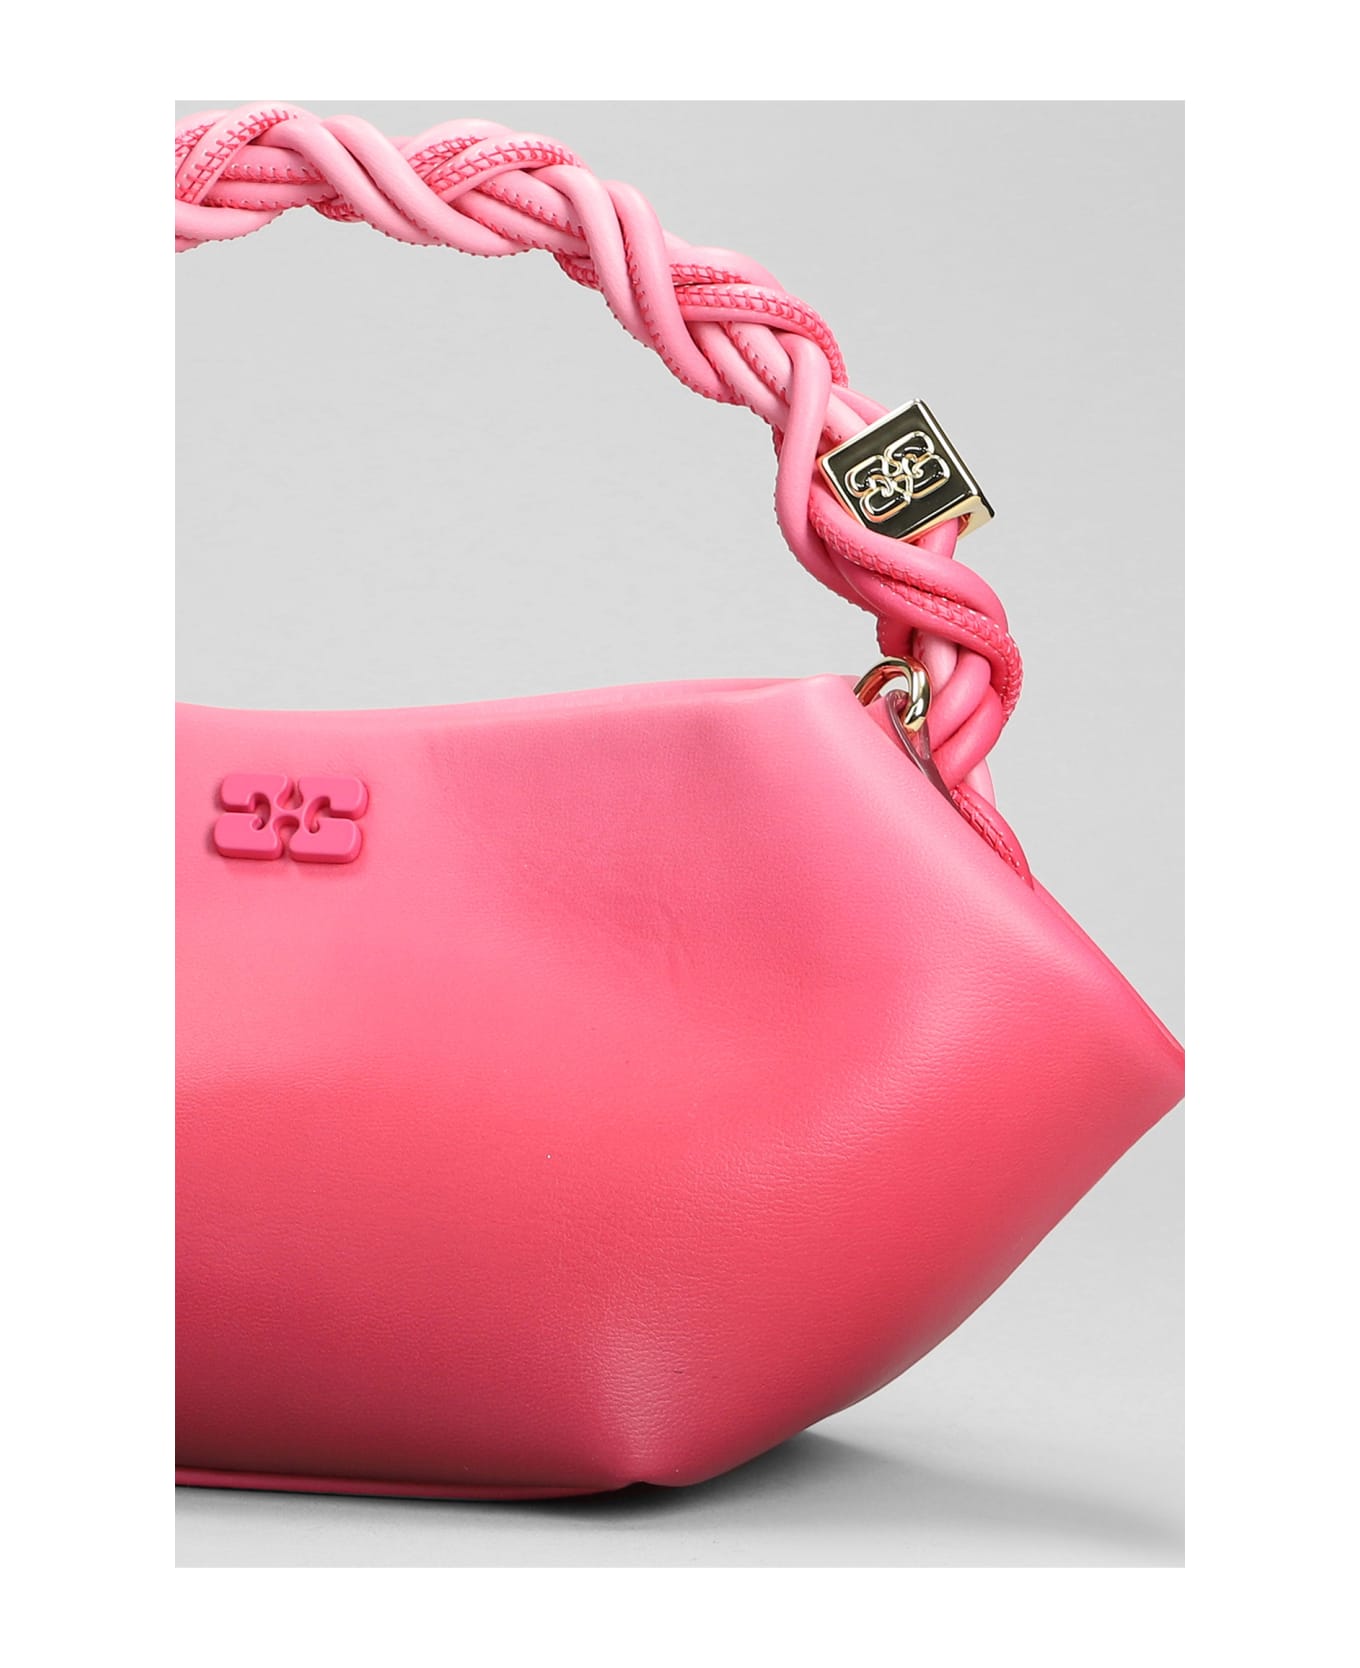 Ganni Bou Shoulder Bag In Rose-pink Leather - rose-pink